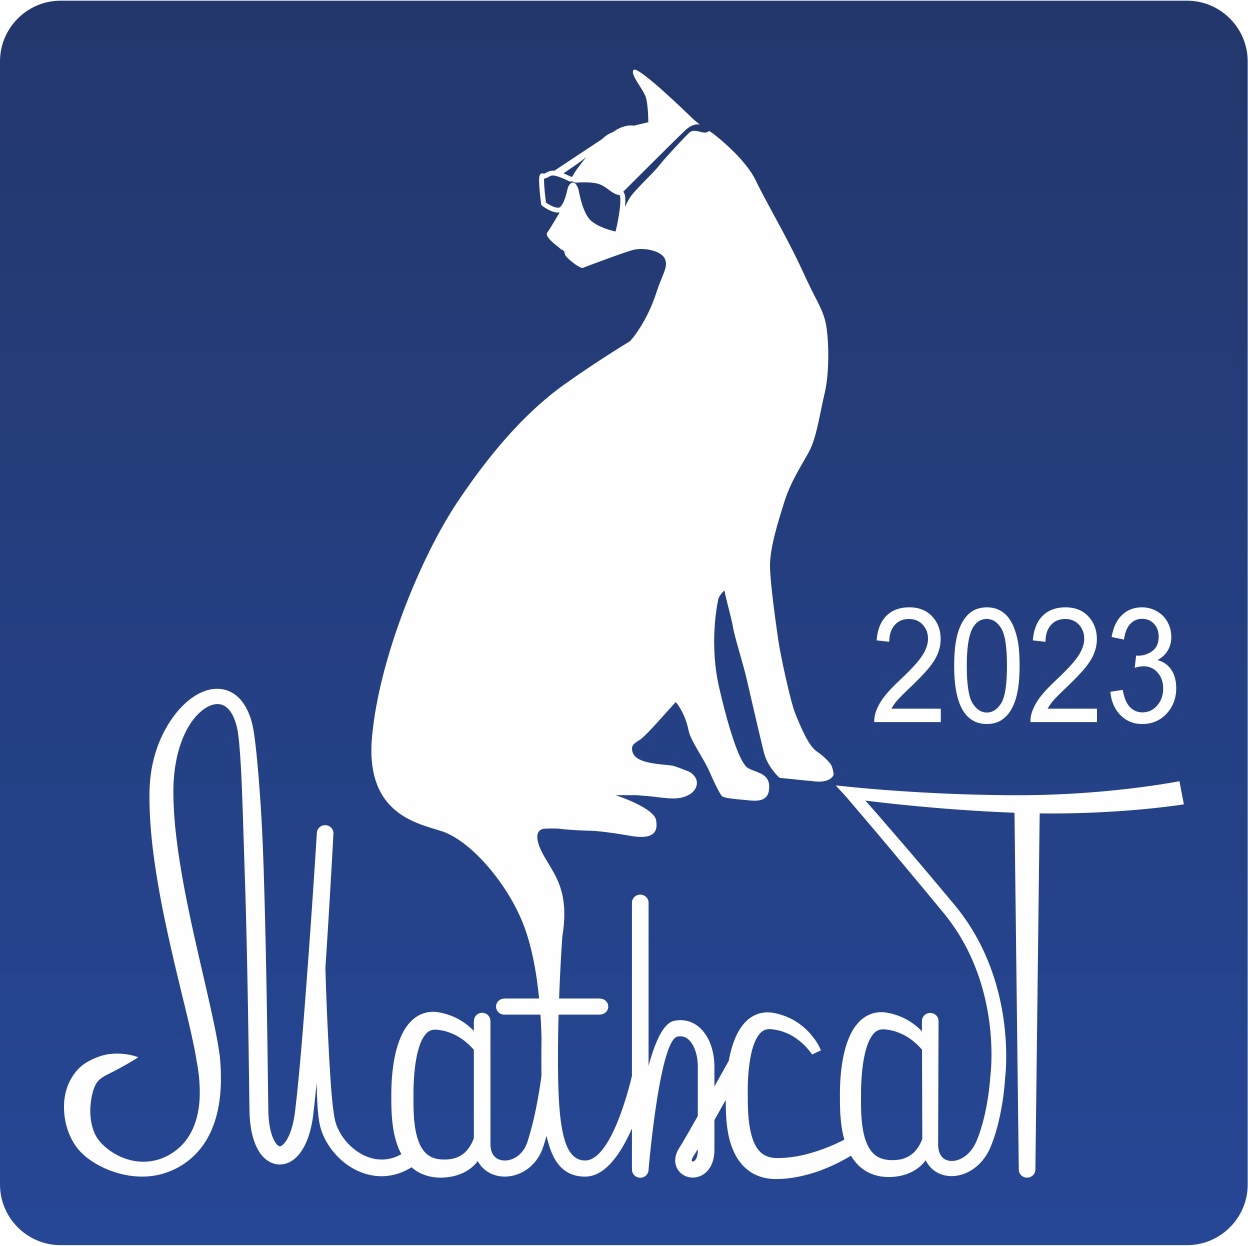 Состоялся X Всероссийский образовательно-развлекательный флешмоб по математике MathCat-2023.